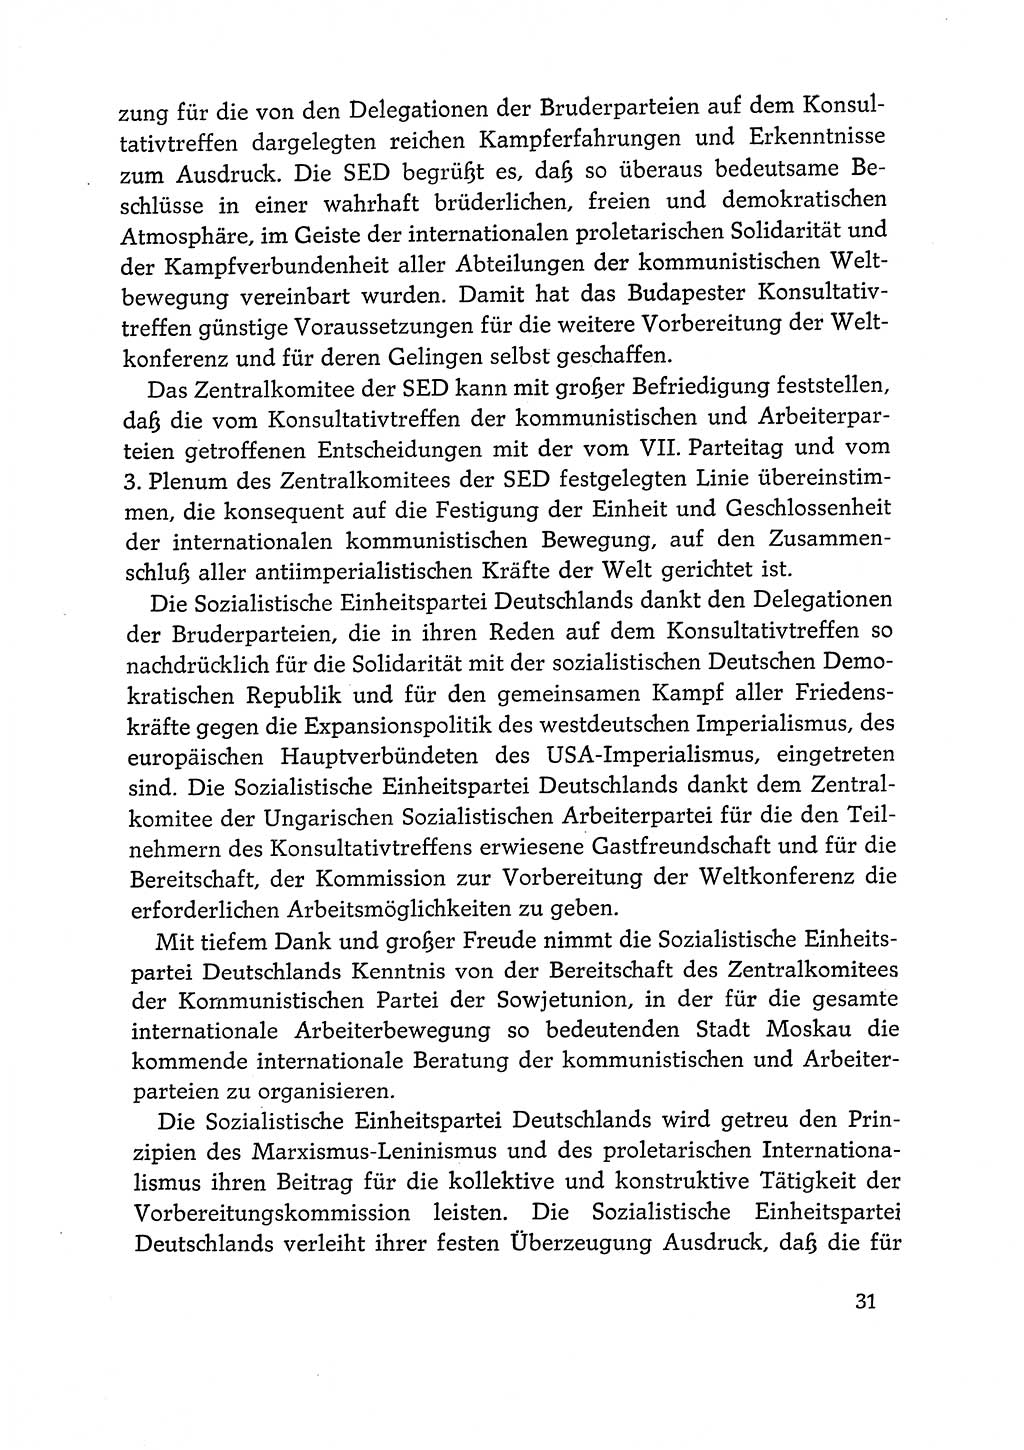 Dokumente der Sozialistischen Einheitspartei Deutschlands (SED) [Deutsche Demokratische Republik (DDR)] 1968-1969, Seite 31 (Dok. SED DDR 1968-1969, S. 31)